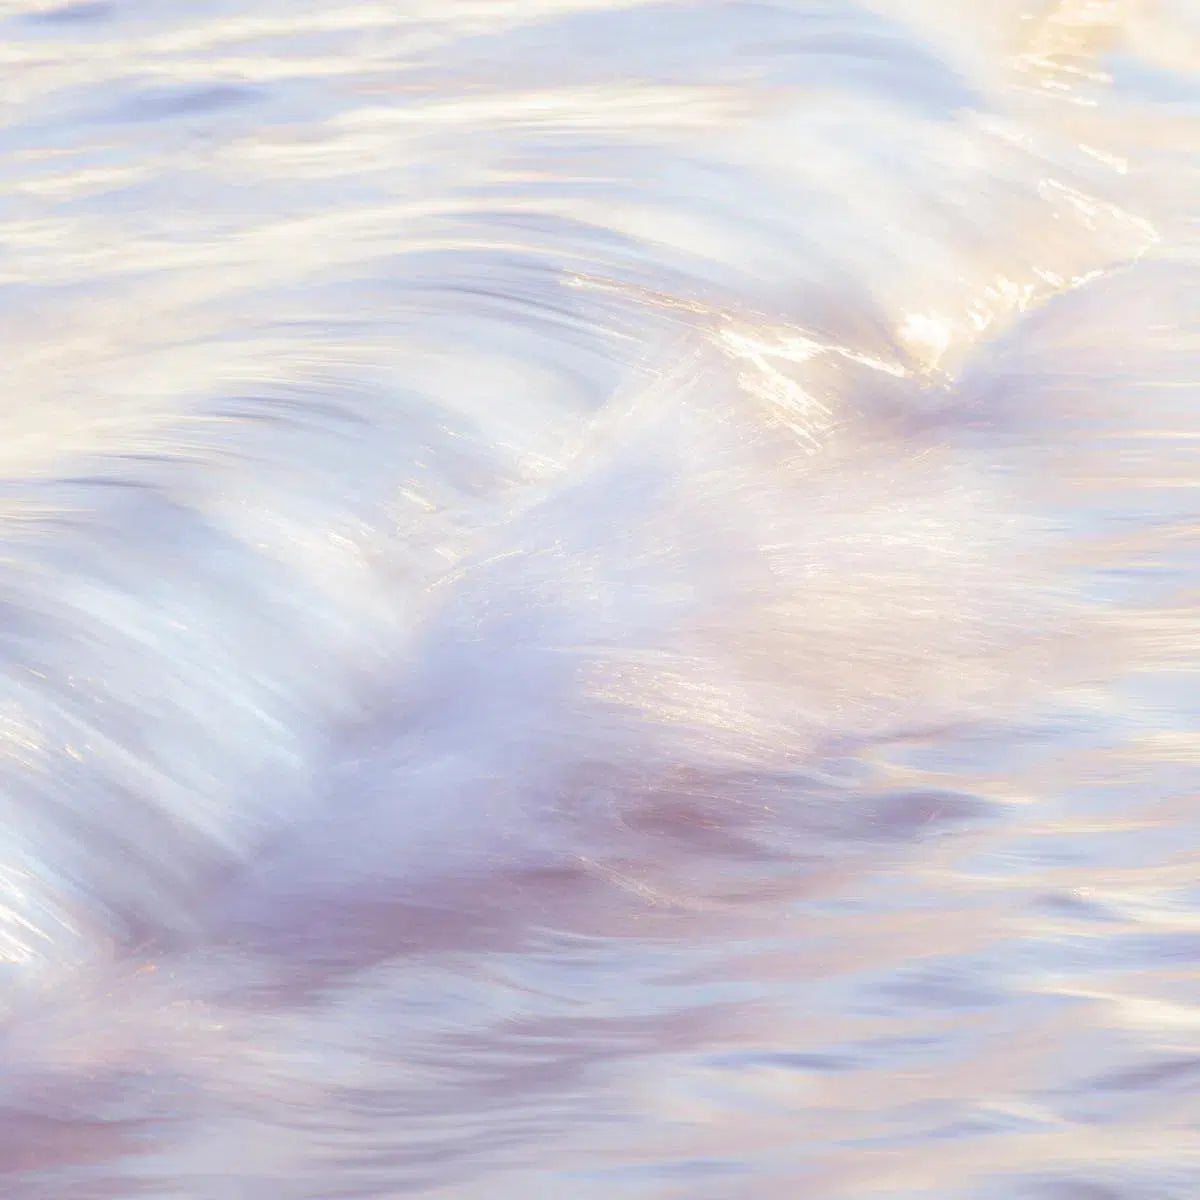 Sakynthos waves 2, by Mats Gustafsson-PurePhoto